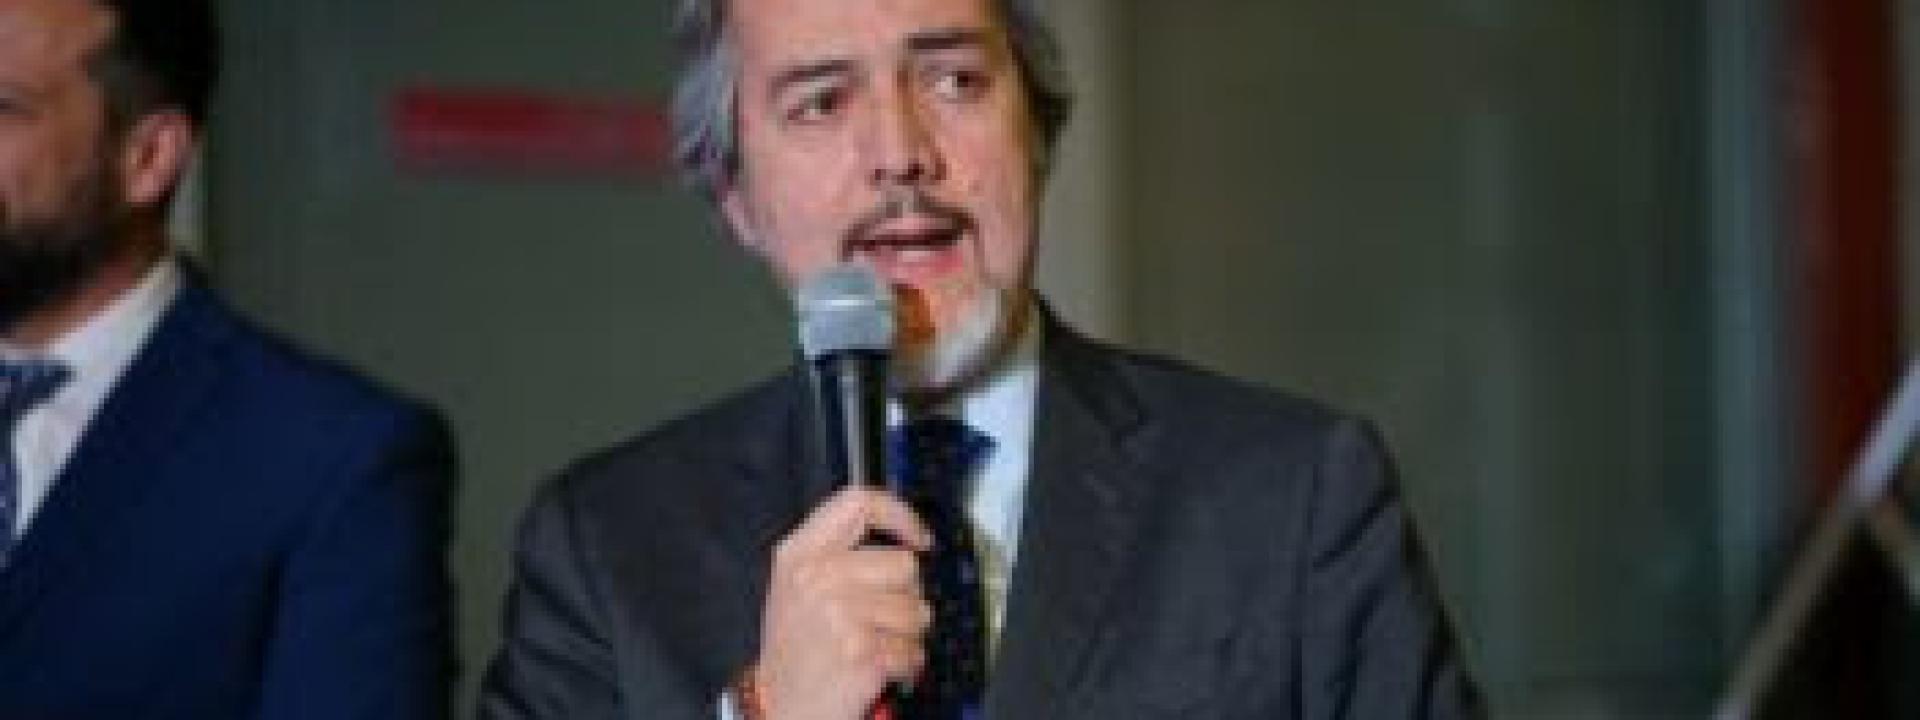 Milleproroghe, Battistoni (FI): “Approvato emendamento per giusta rappresentanza Marche  in Camera di Commercio a spese invariate”